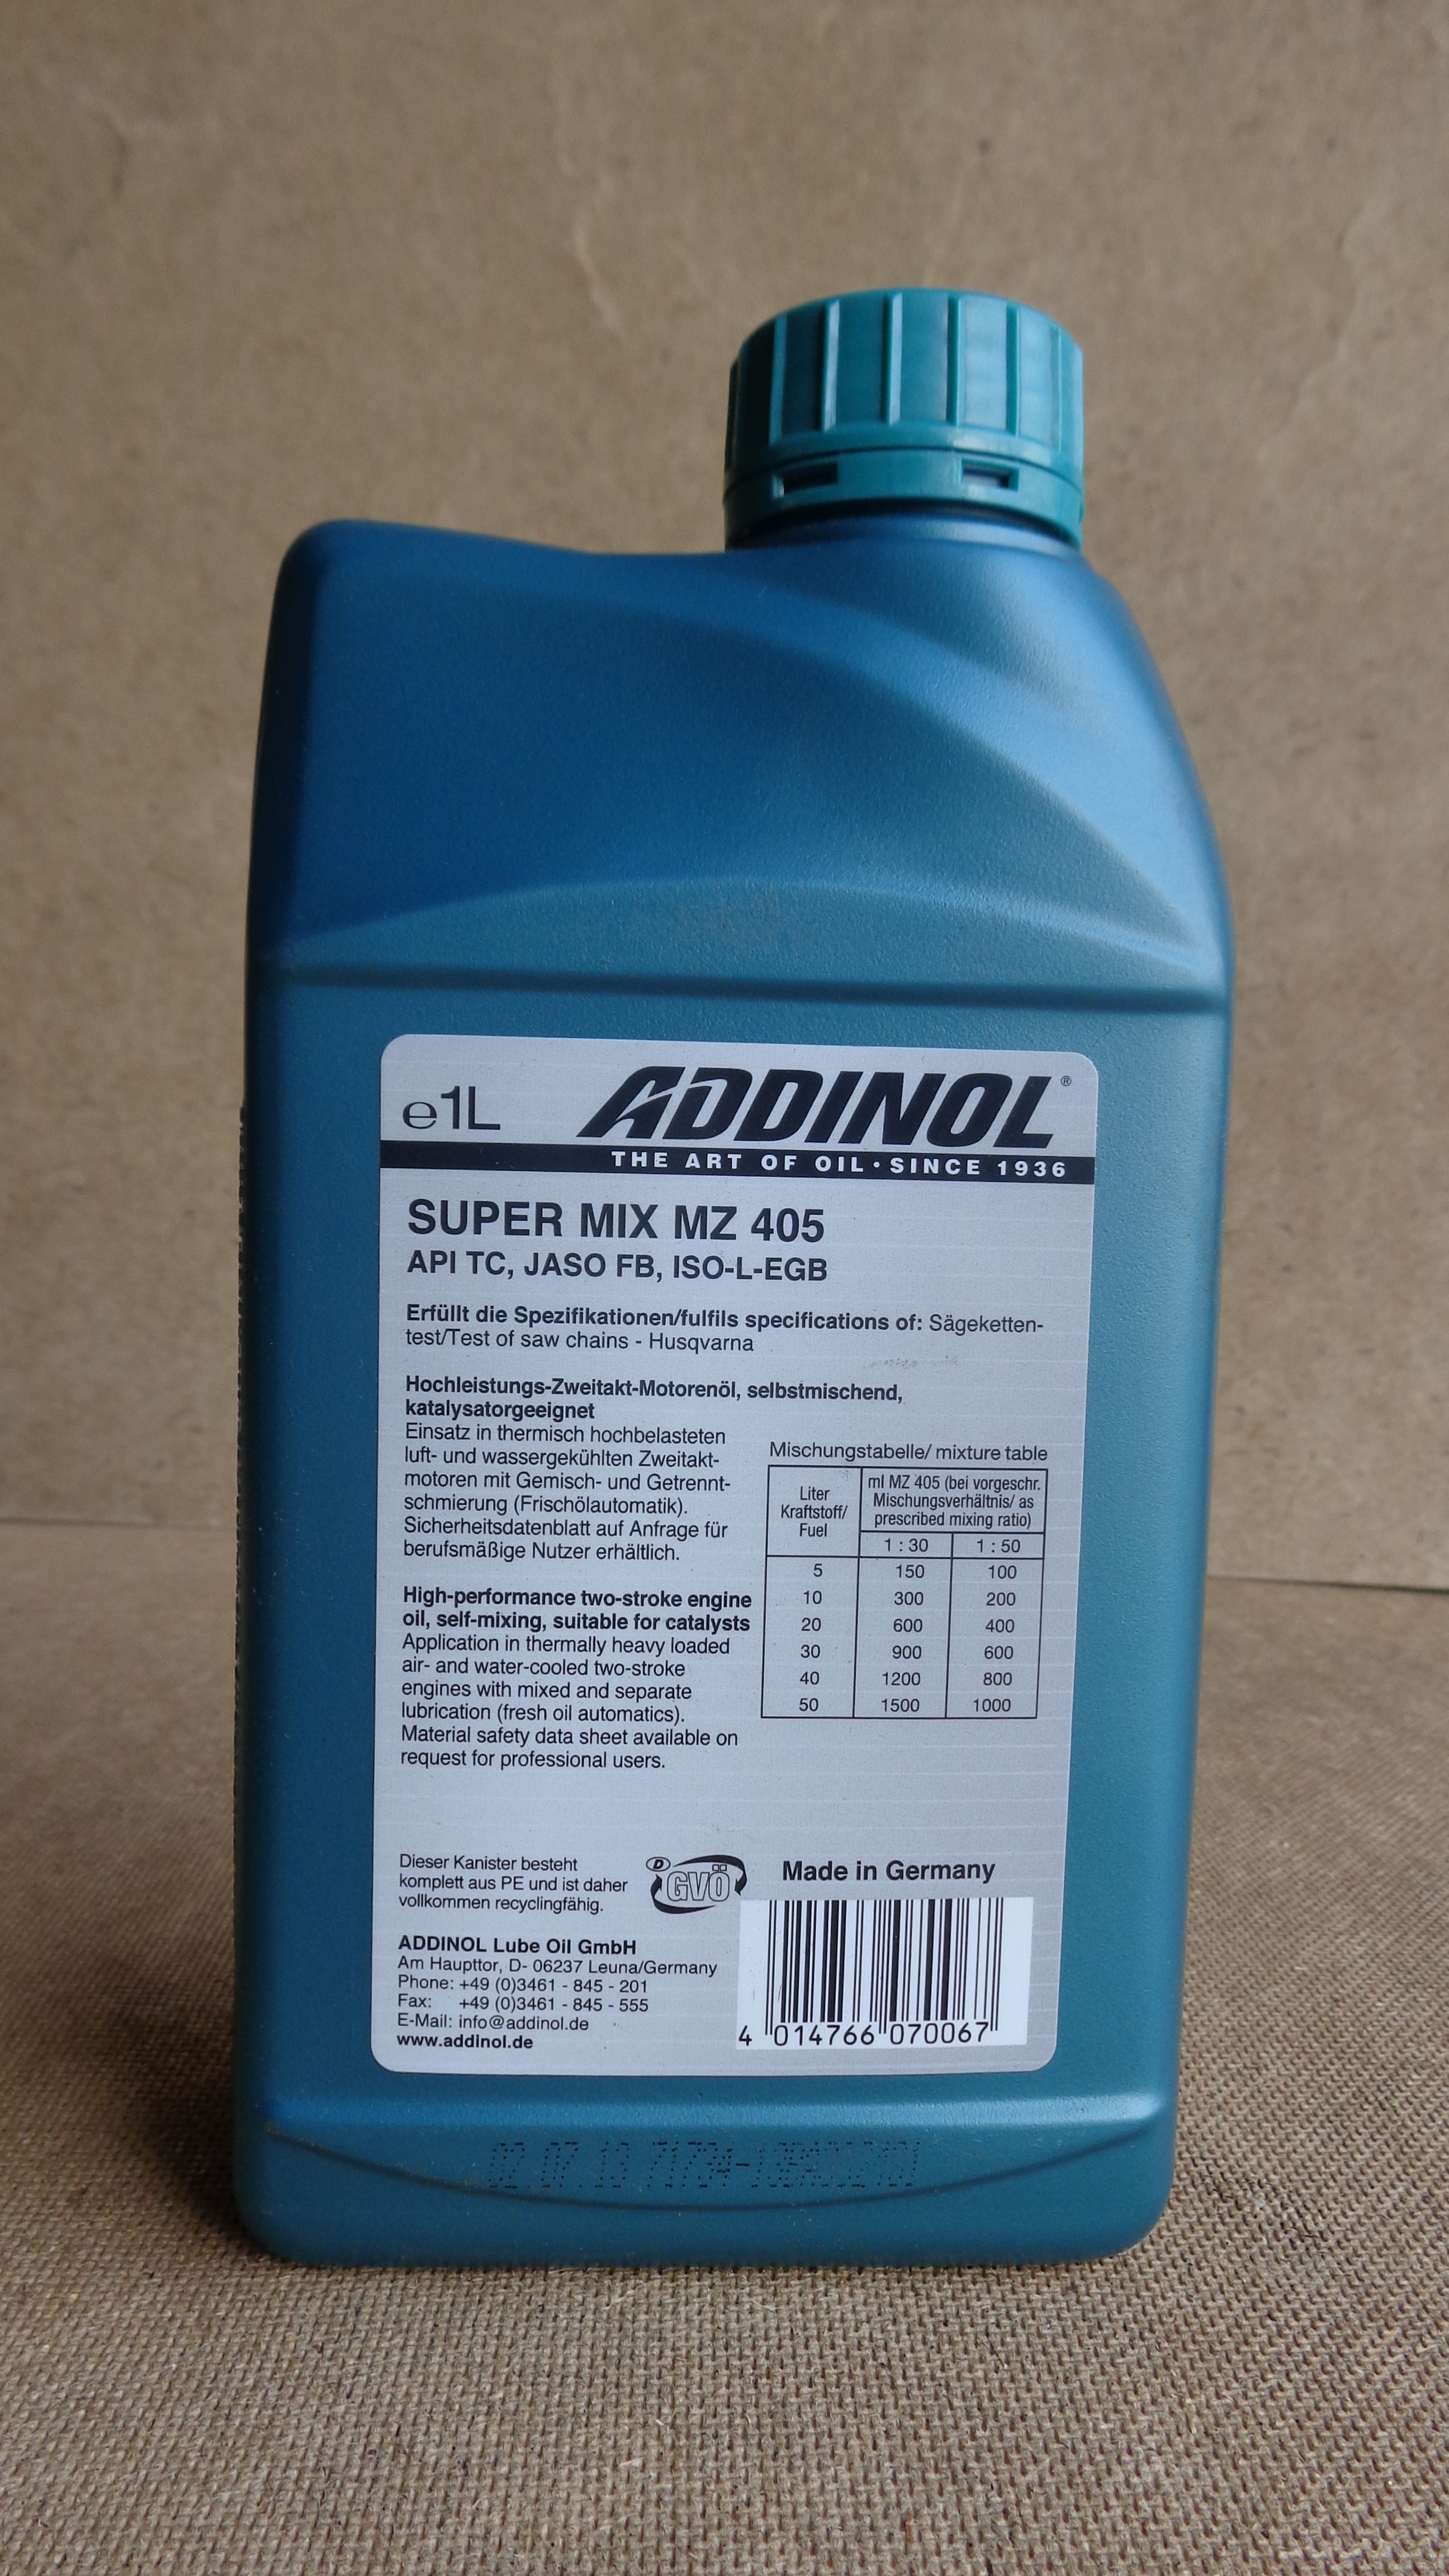 Купить запчасть ADDINOL - 4014766070067 Моторное масло Addinol Super Mix MZ 405 5W-40 1л